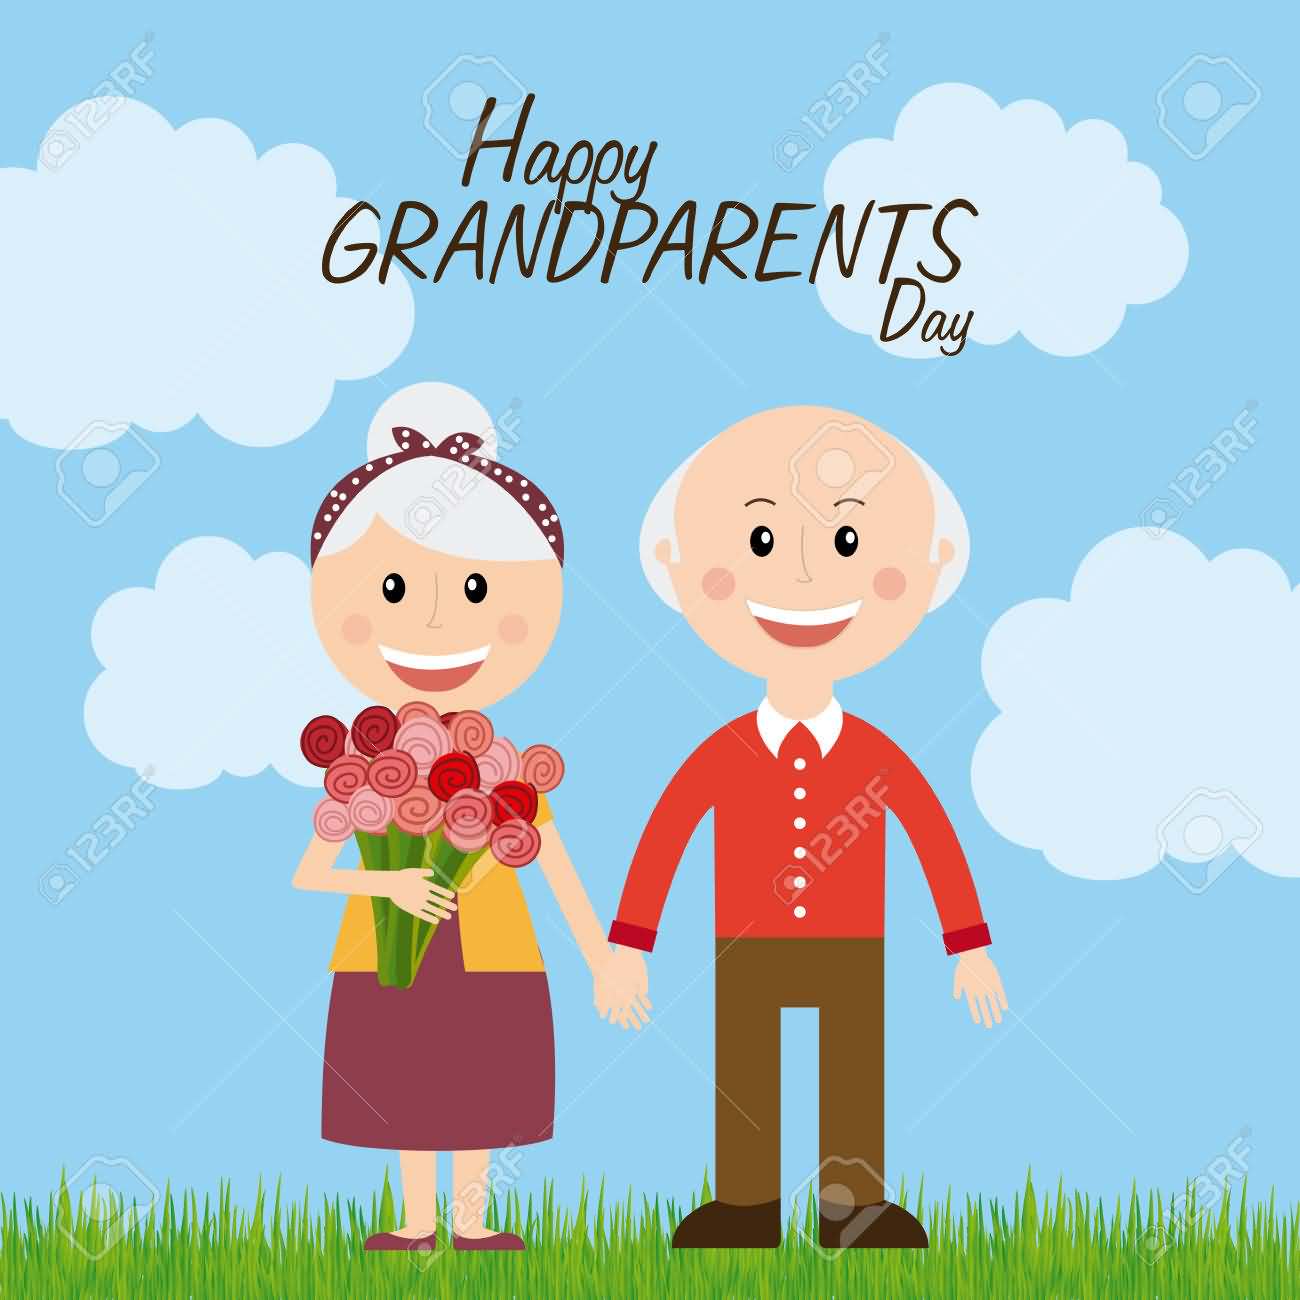 Happy Grandparents Day grandma and grandpa illustration